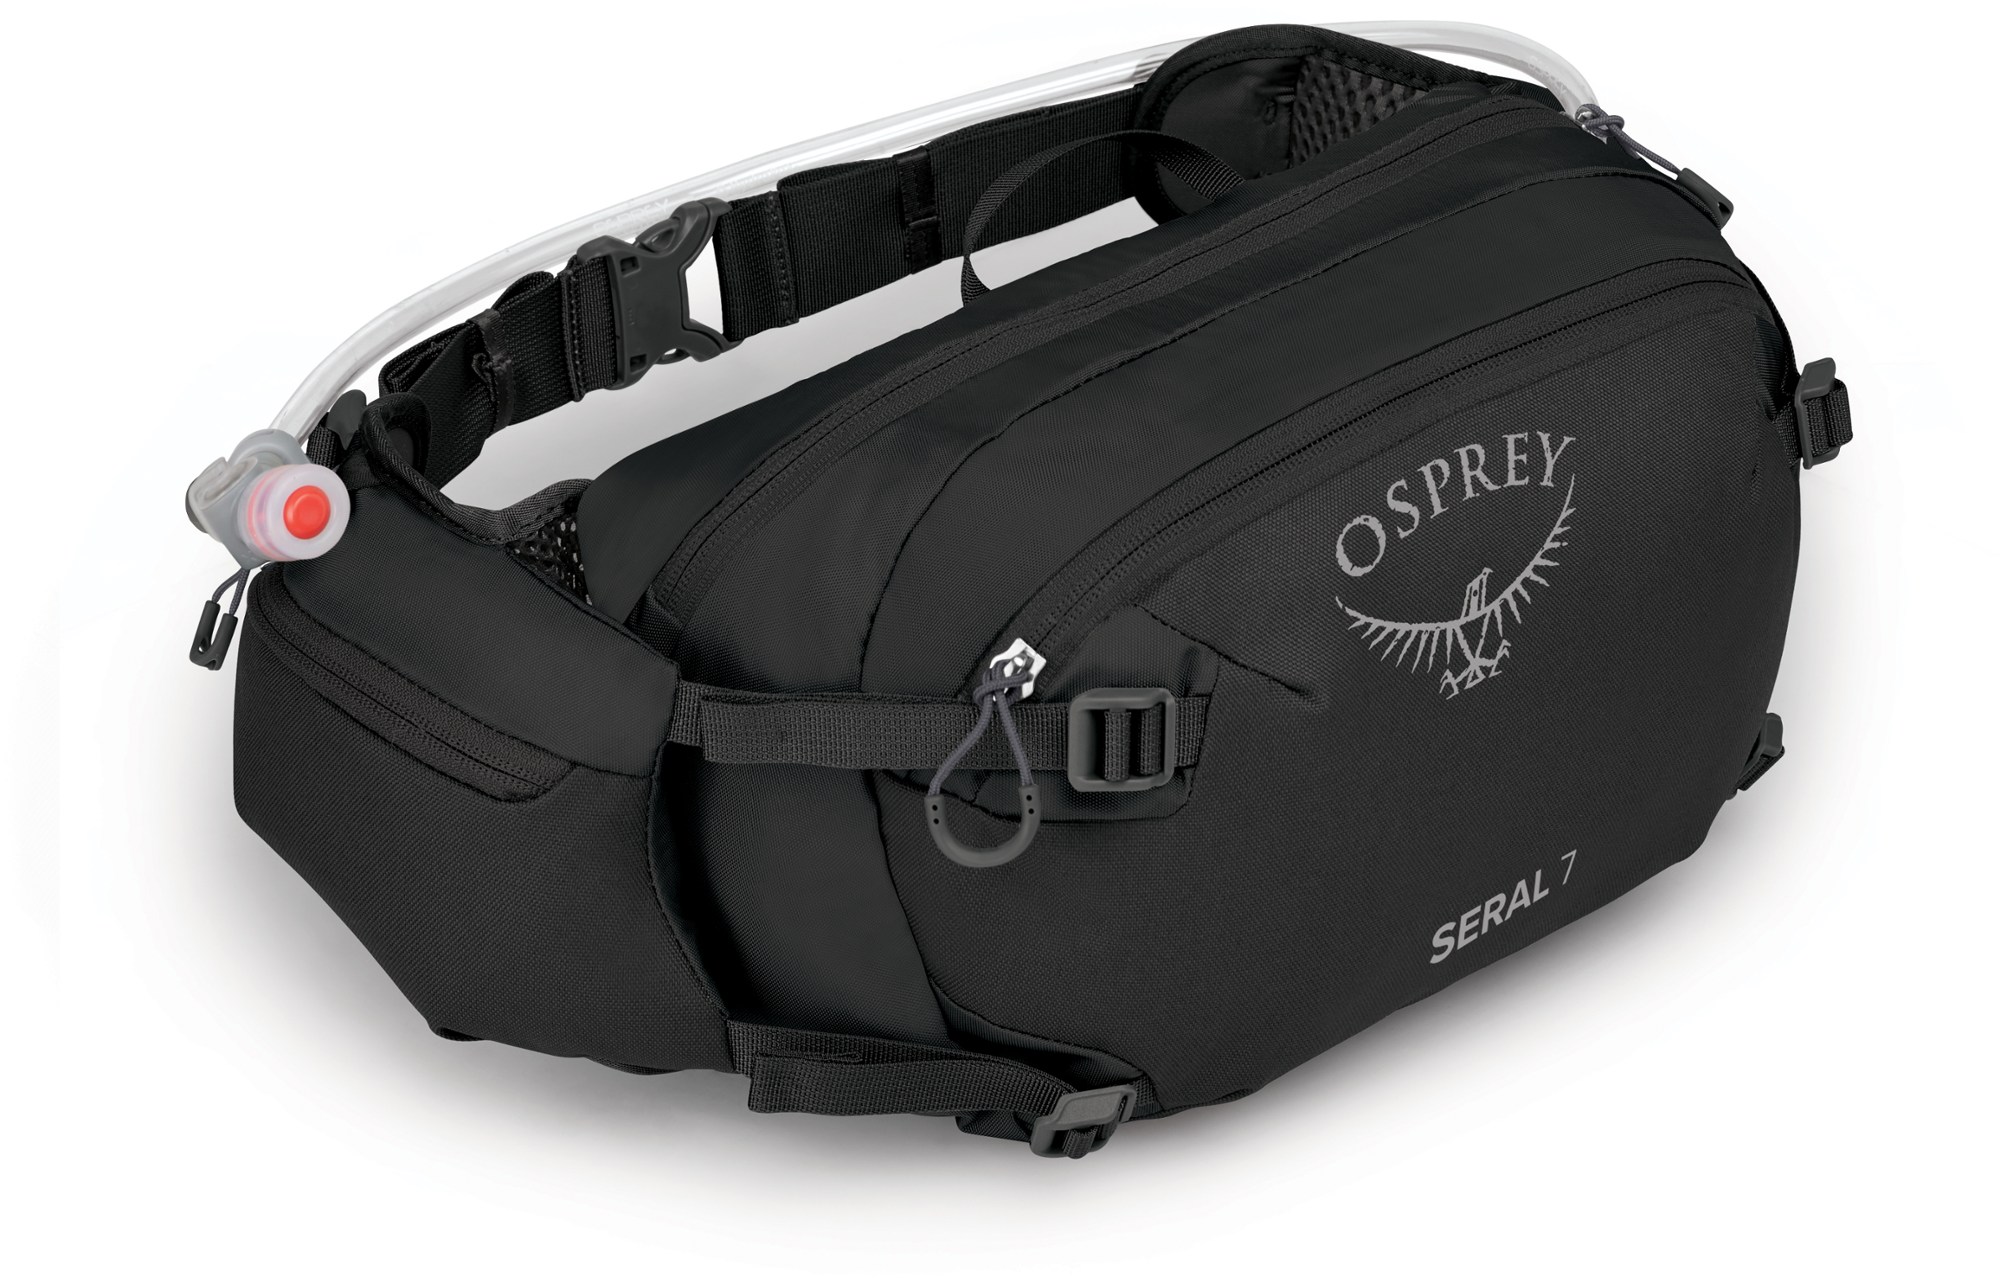 Поясная увлажняющая сумка Seral 7 Osprey, черный